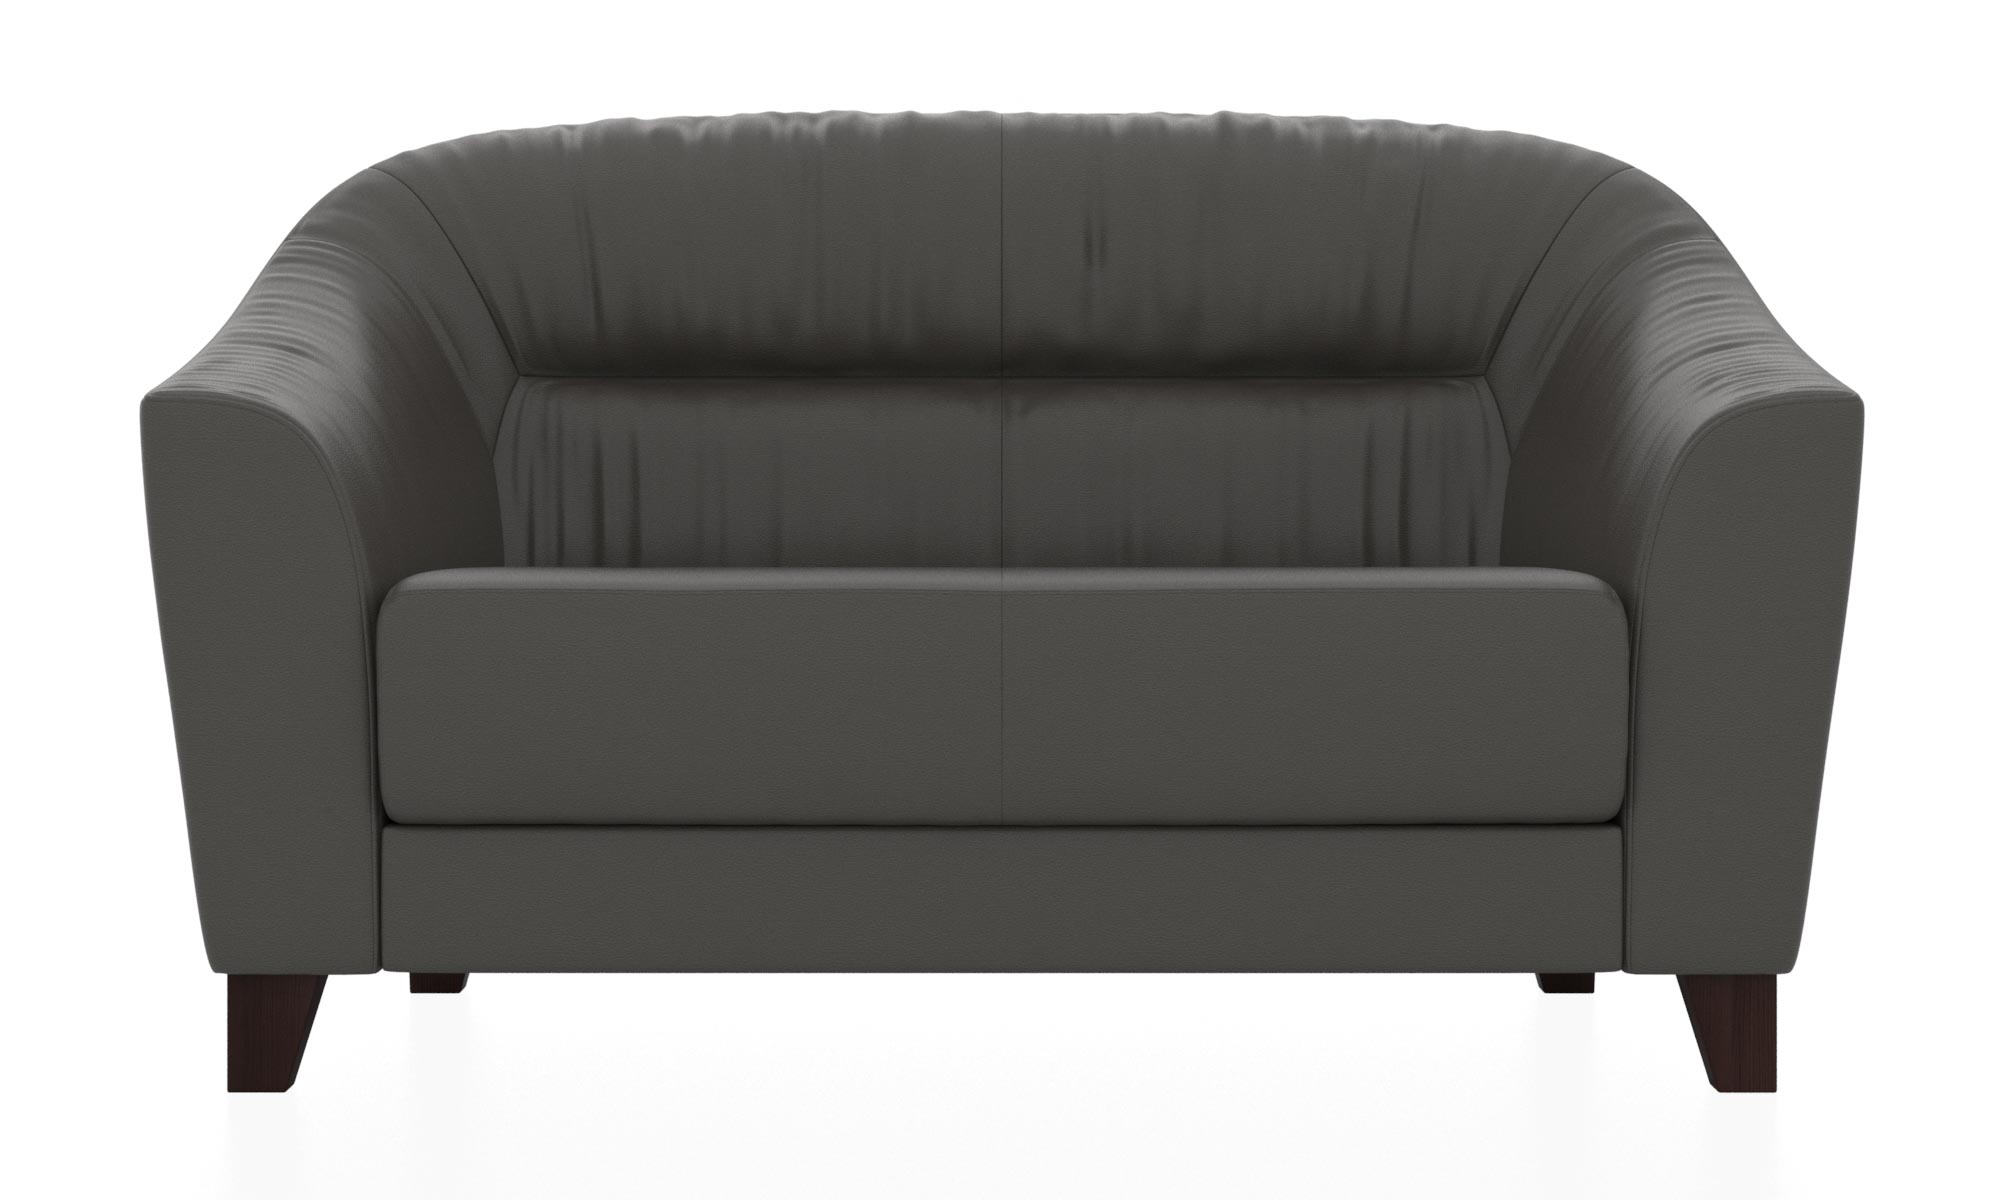 Двухместный диван с обивкой из кожзама. Цвет серый (euroline 995)